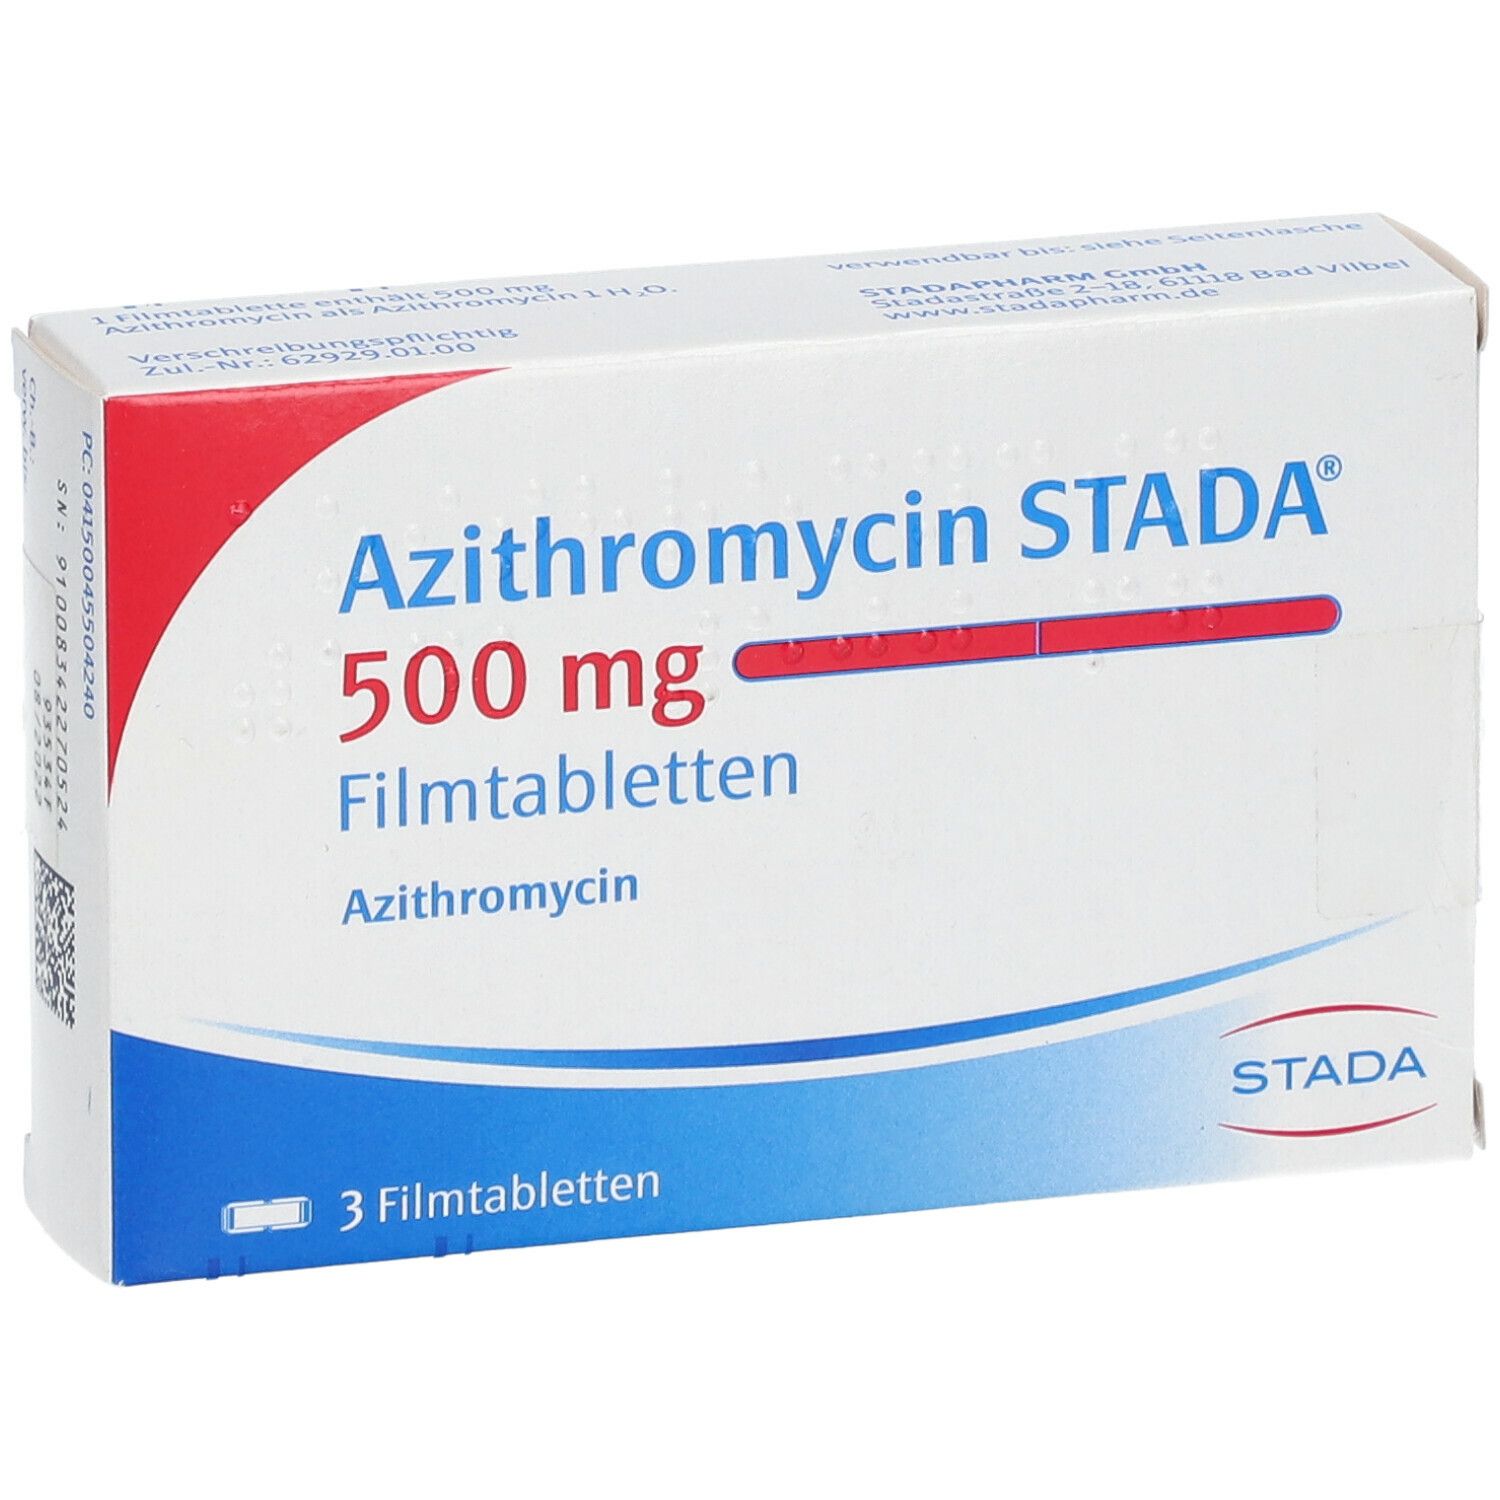 Azithromycin Stada 500 mg Filmtabletten 3 St